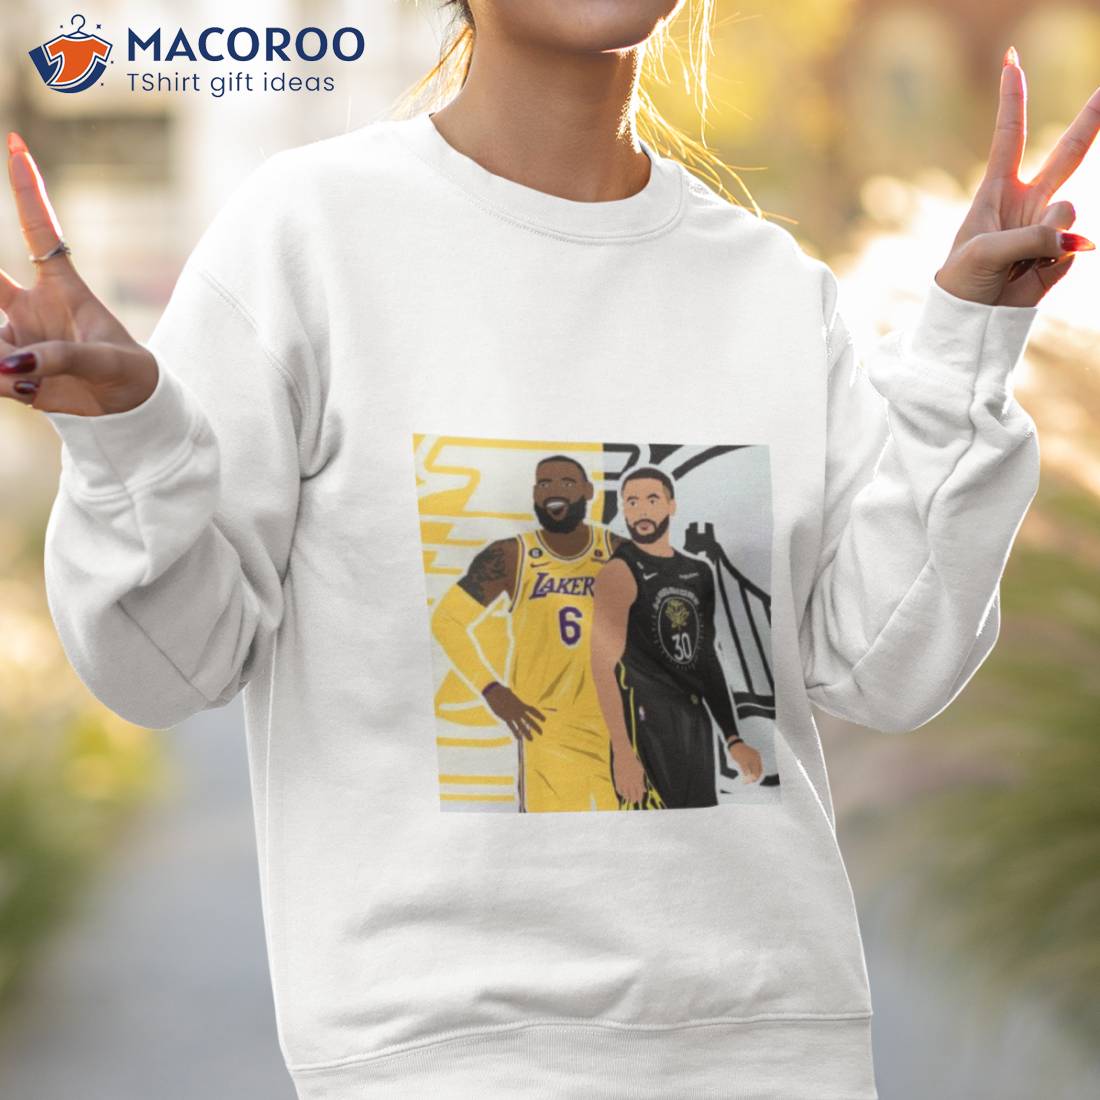 Lakers Unisex Hoodie/ Pop-art Los Angeles Fan Gift/ College 